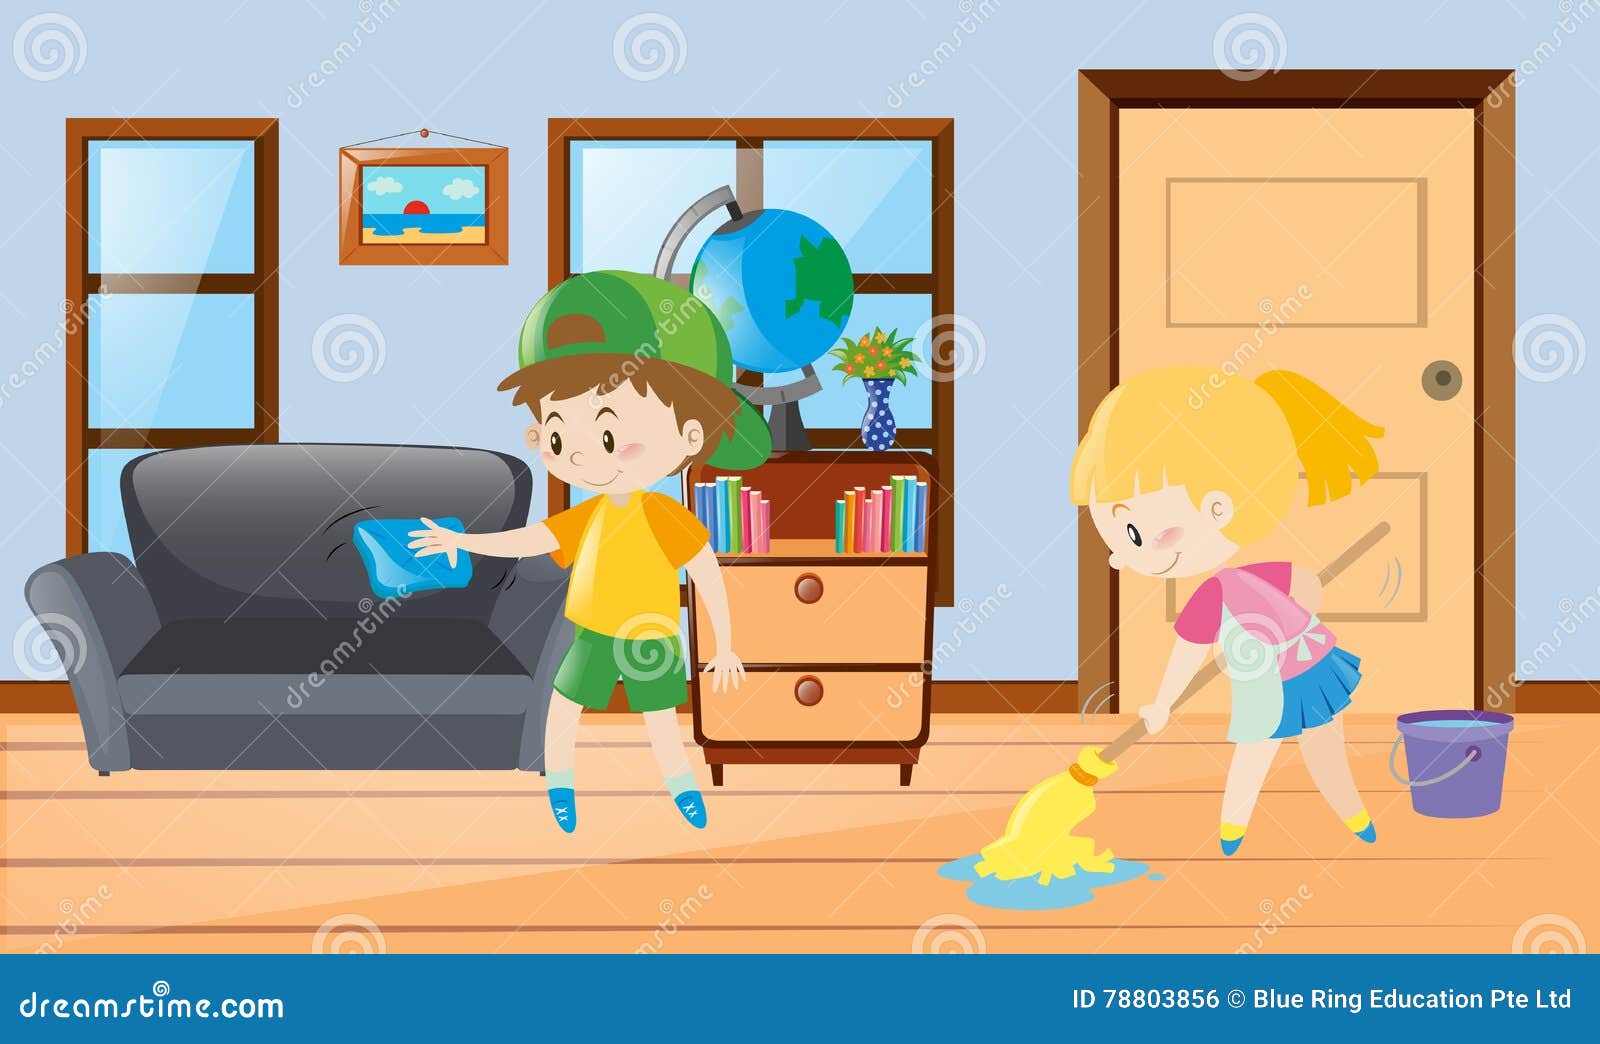 I were cleaning the house. Ребенок убирает в комнате. Мальчик и девочка убираются. Уборка в комнате для детей. Убираться в доме мультяшная.